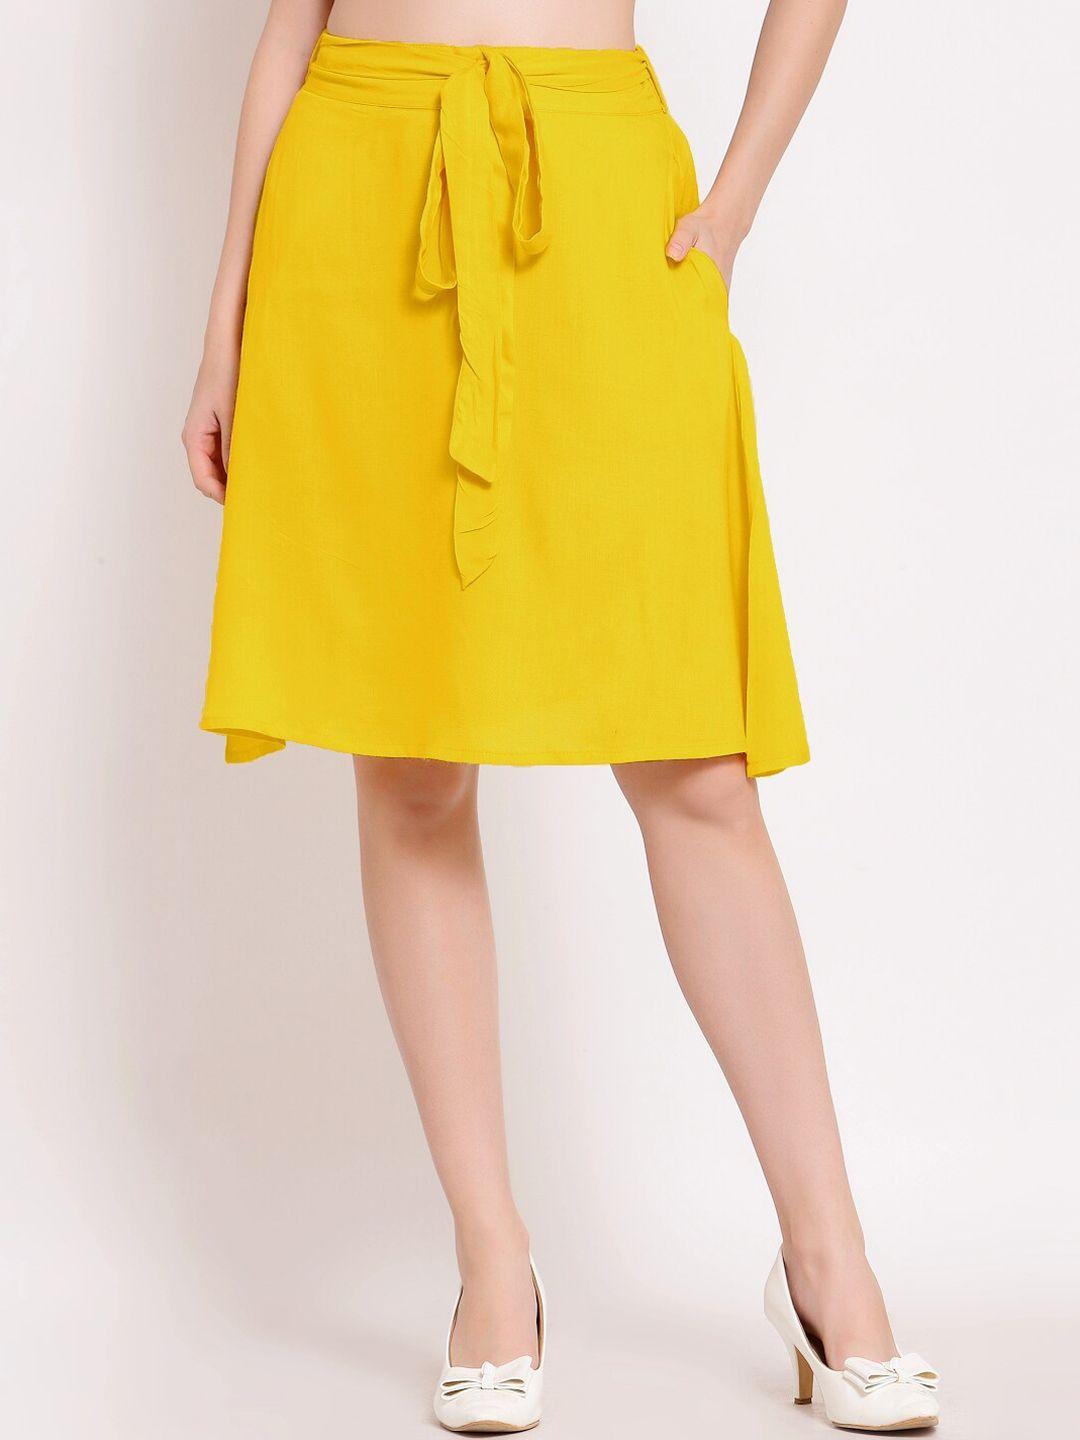 patrorna women mustard pleated tiered skirt